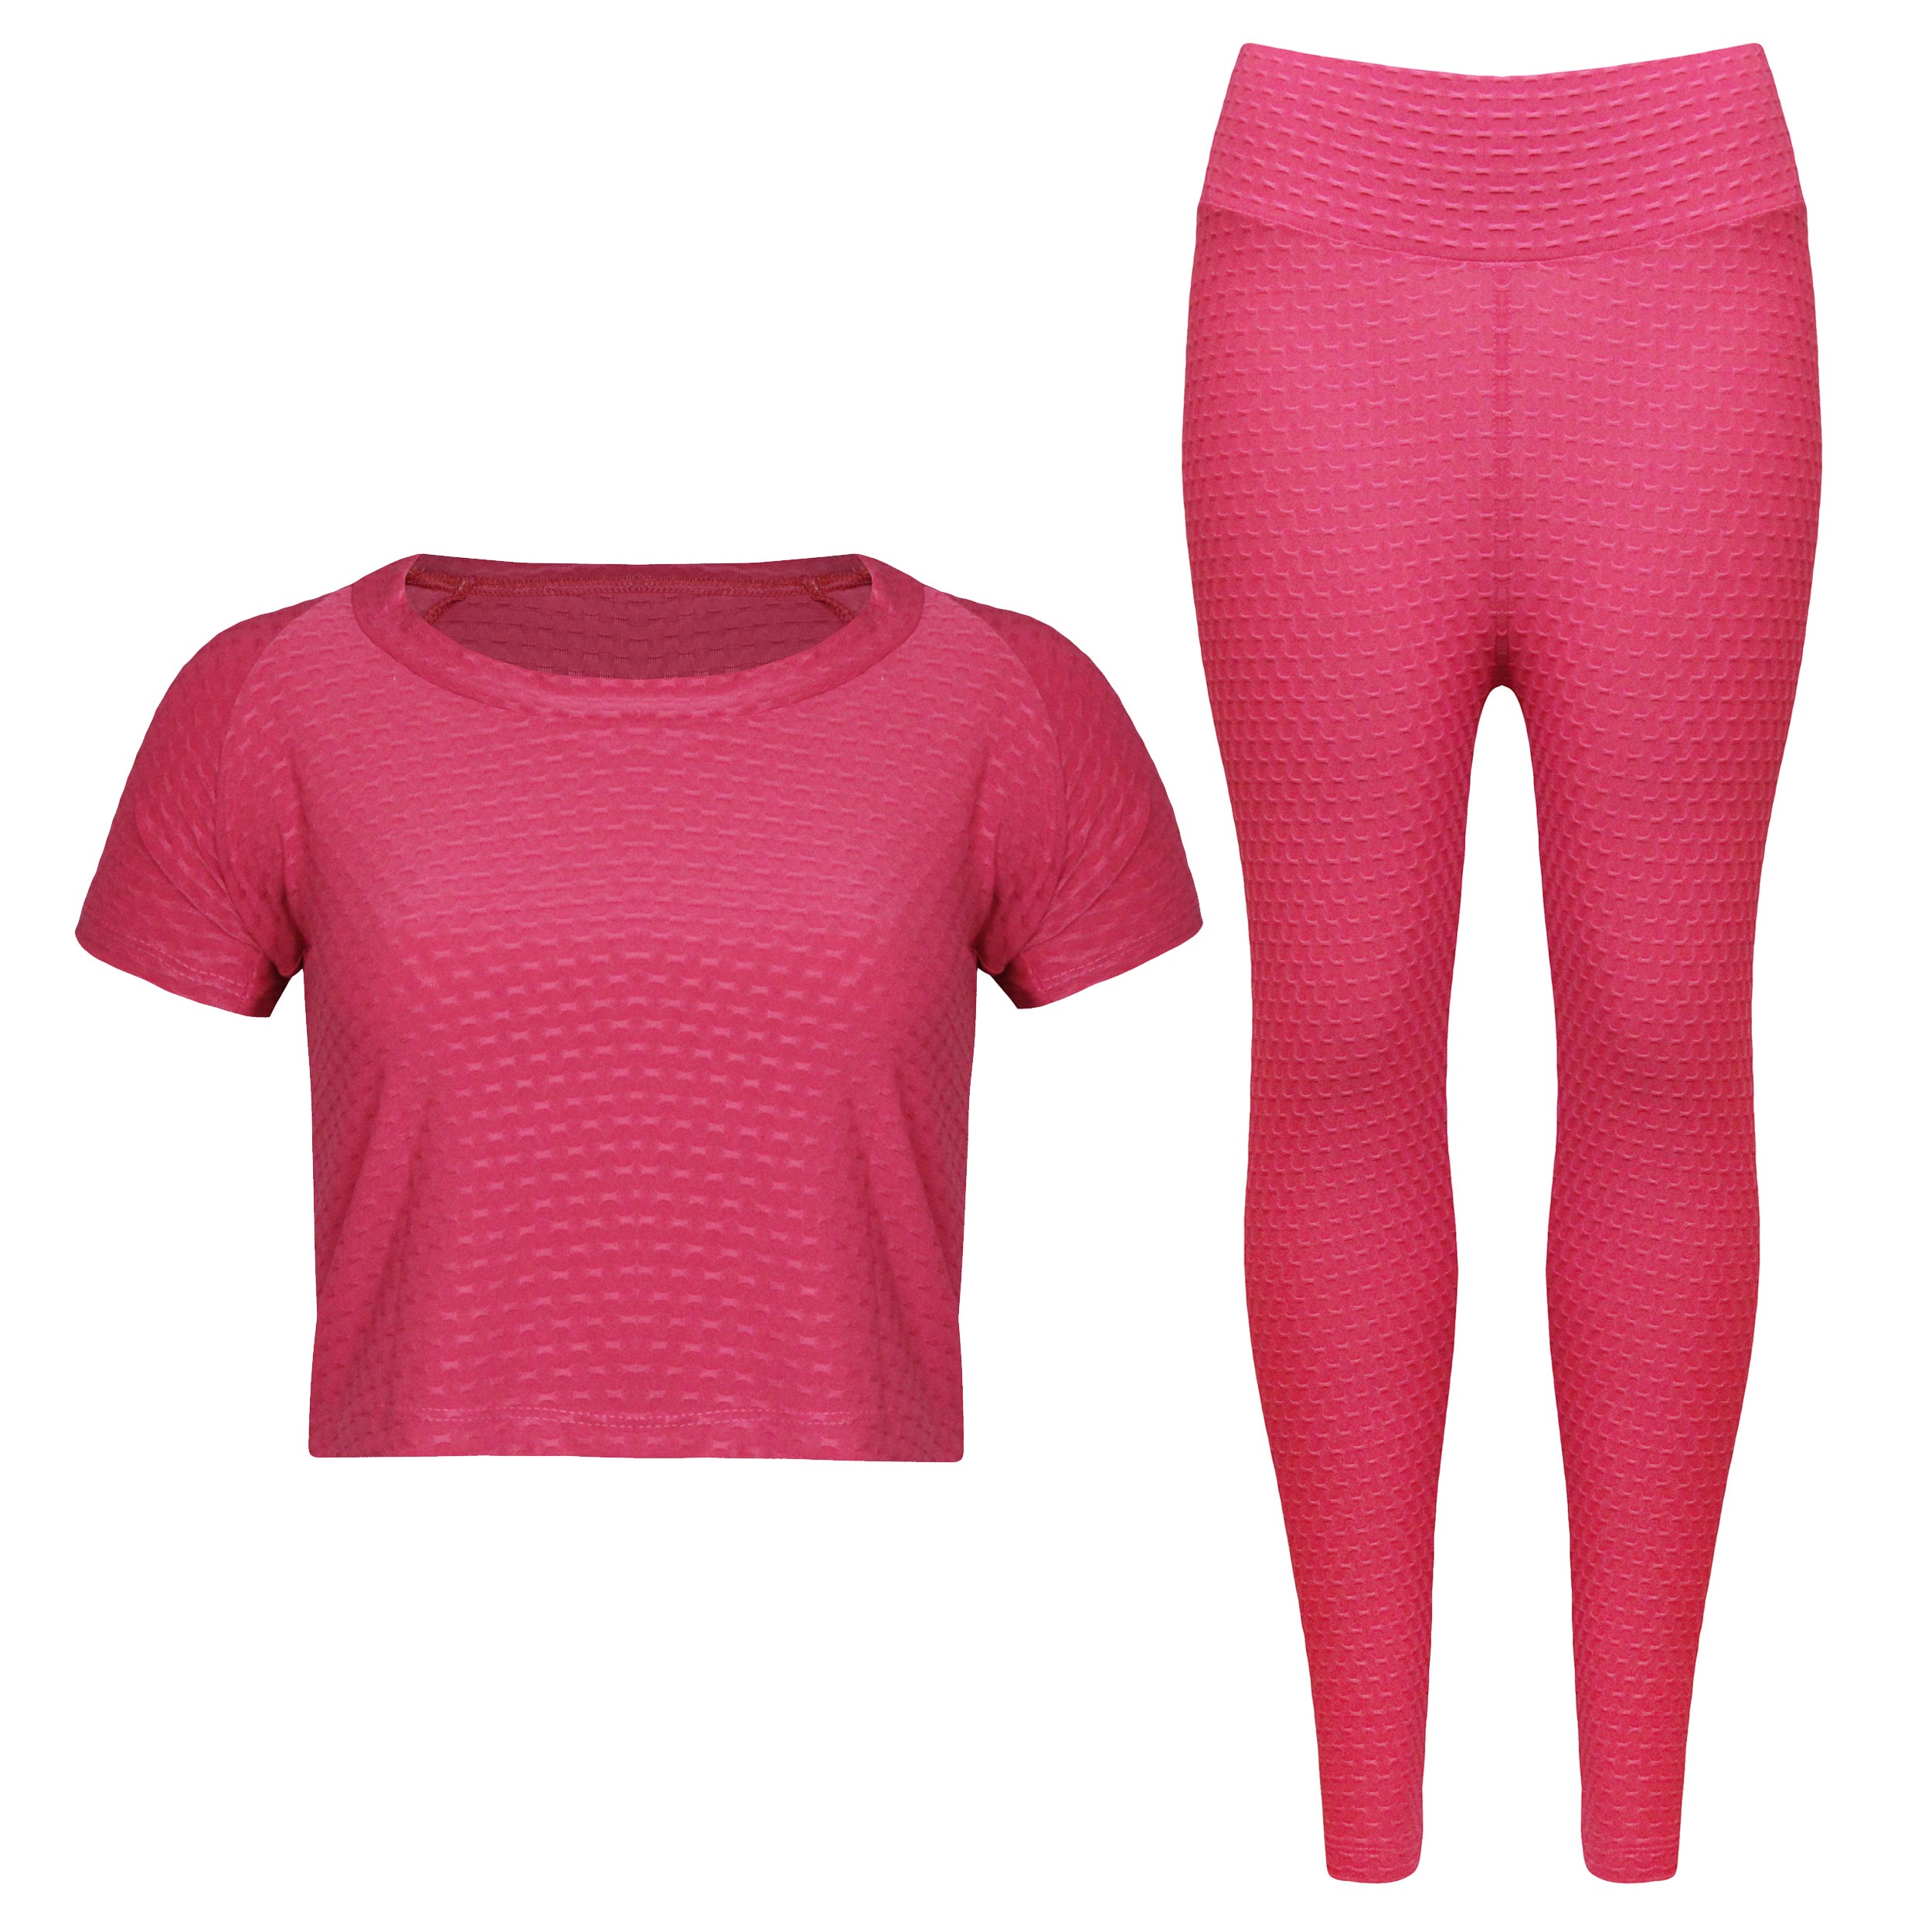 ست تی شرت و لگینگ ورزشی زنانه ماییلدا مدل 4348-6743 رنگ صورتی -  - 1